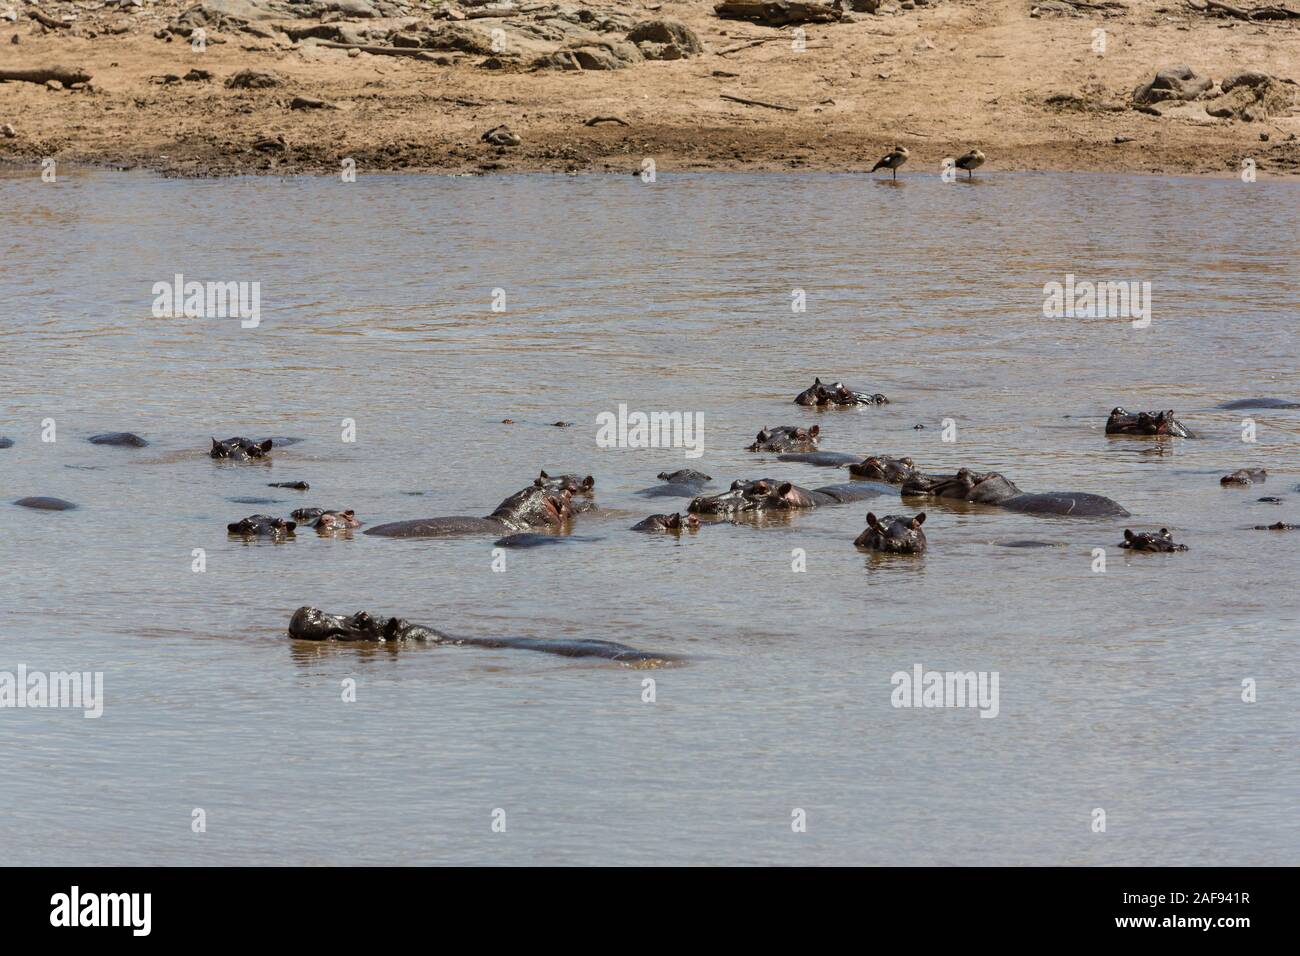 Tanzania. Serengeti. Hippos in the Mara River. Stock Photo